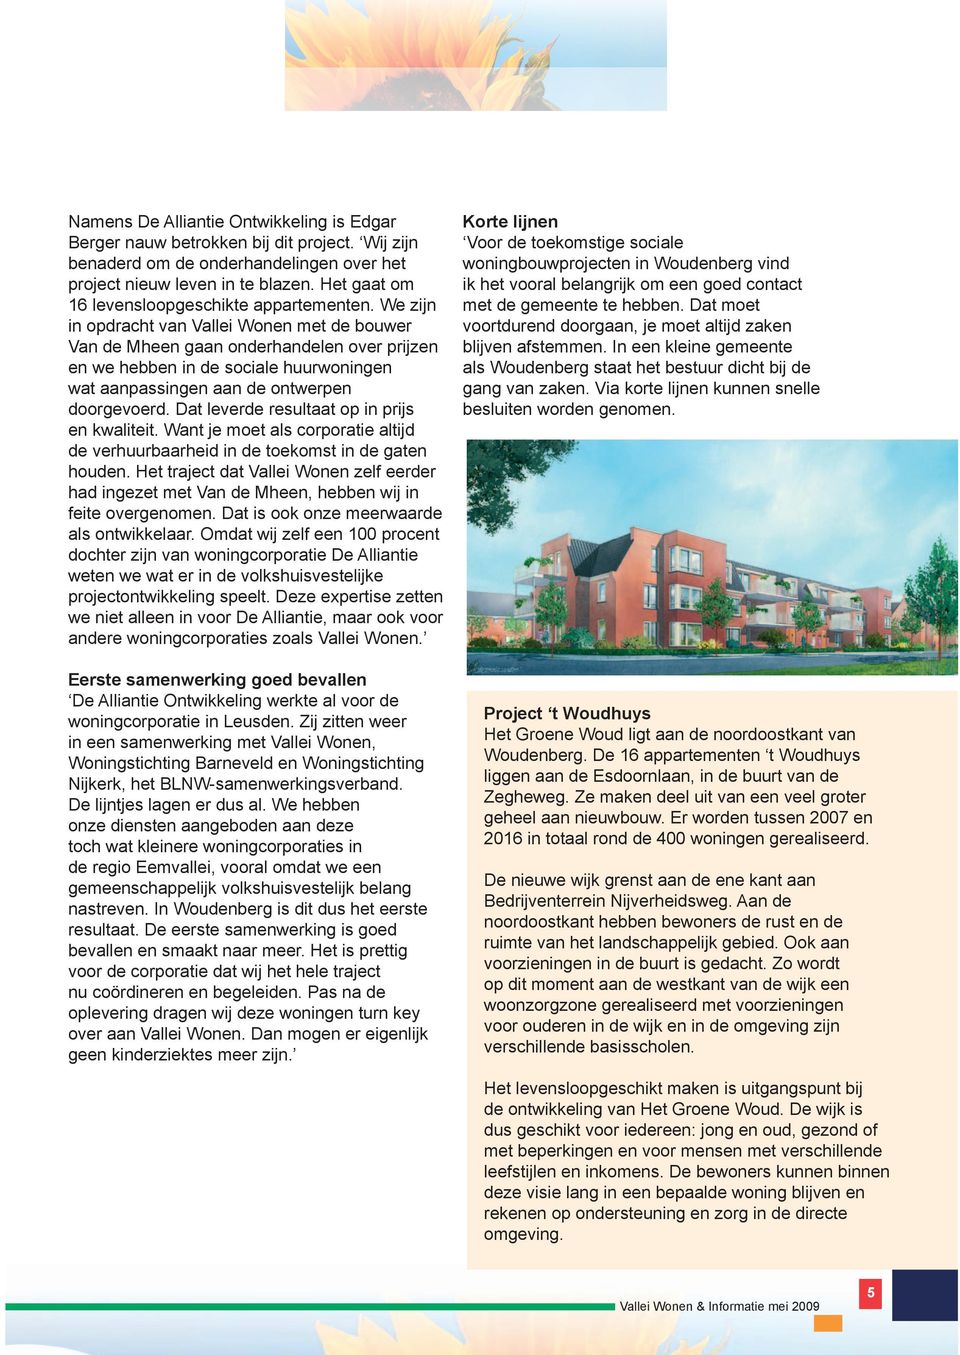 We zijn in opdracht van Vallei Wonen met de bouwer Van de Mheen gaan onderhandelen over prijzen en we hebben in de sociale huurwoningen wat aanpassingen aan de ontwerpen doorgevoerd.